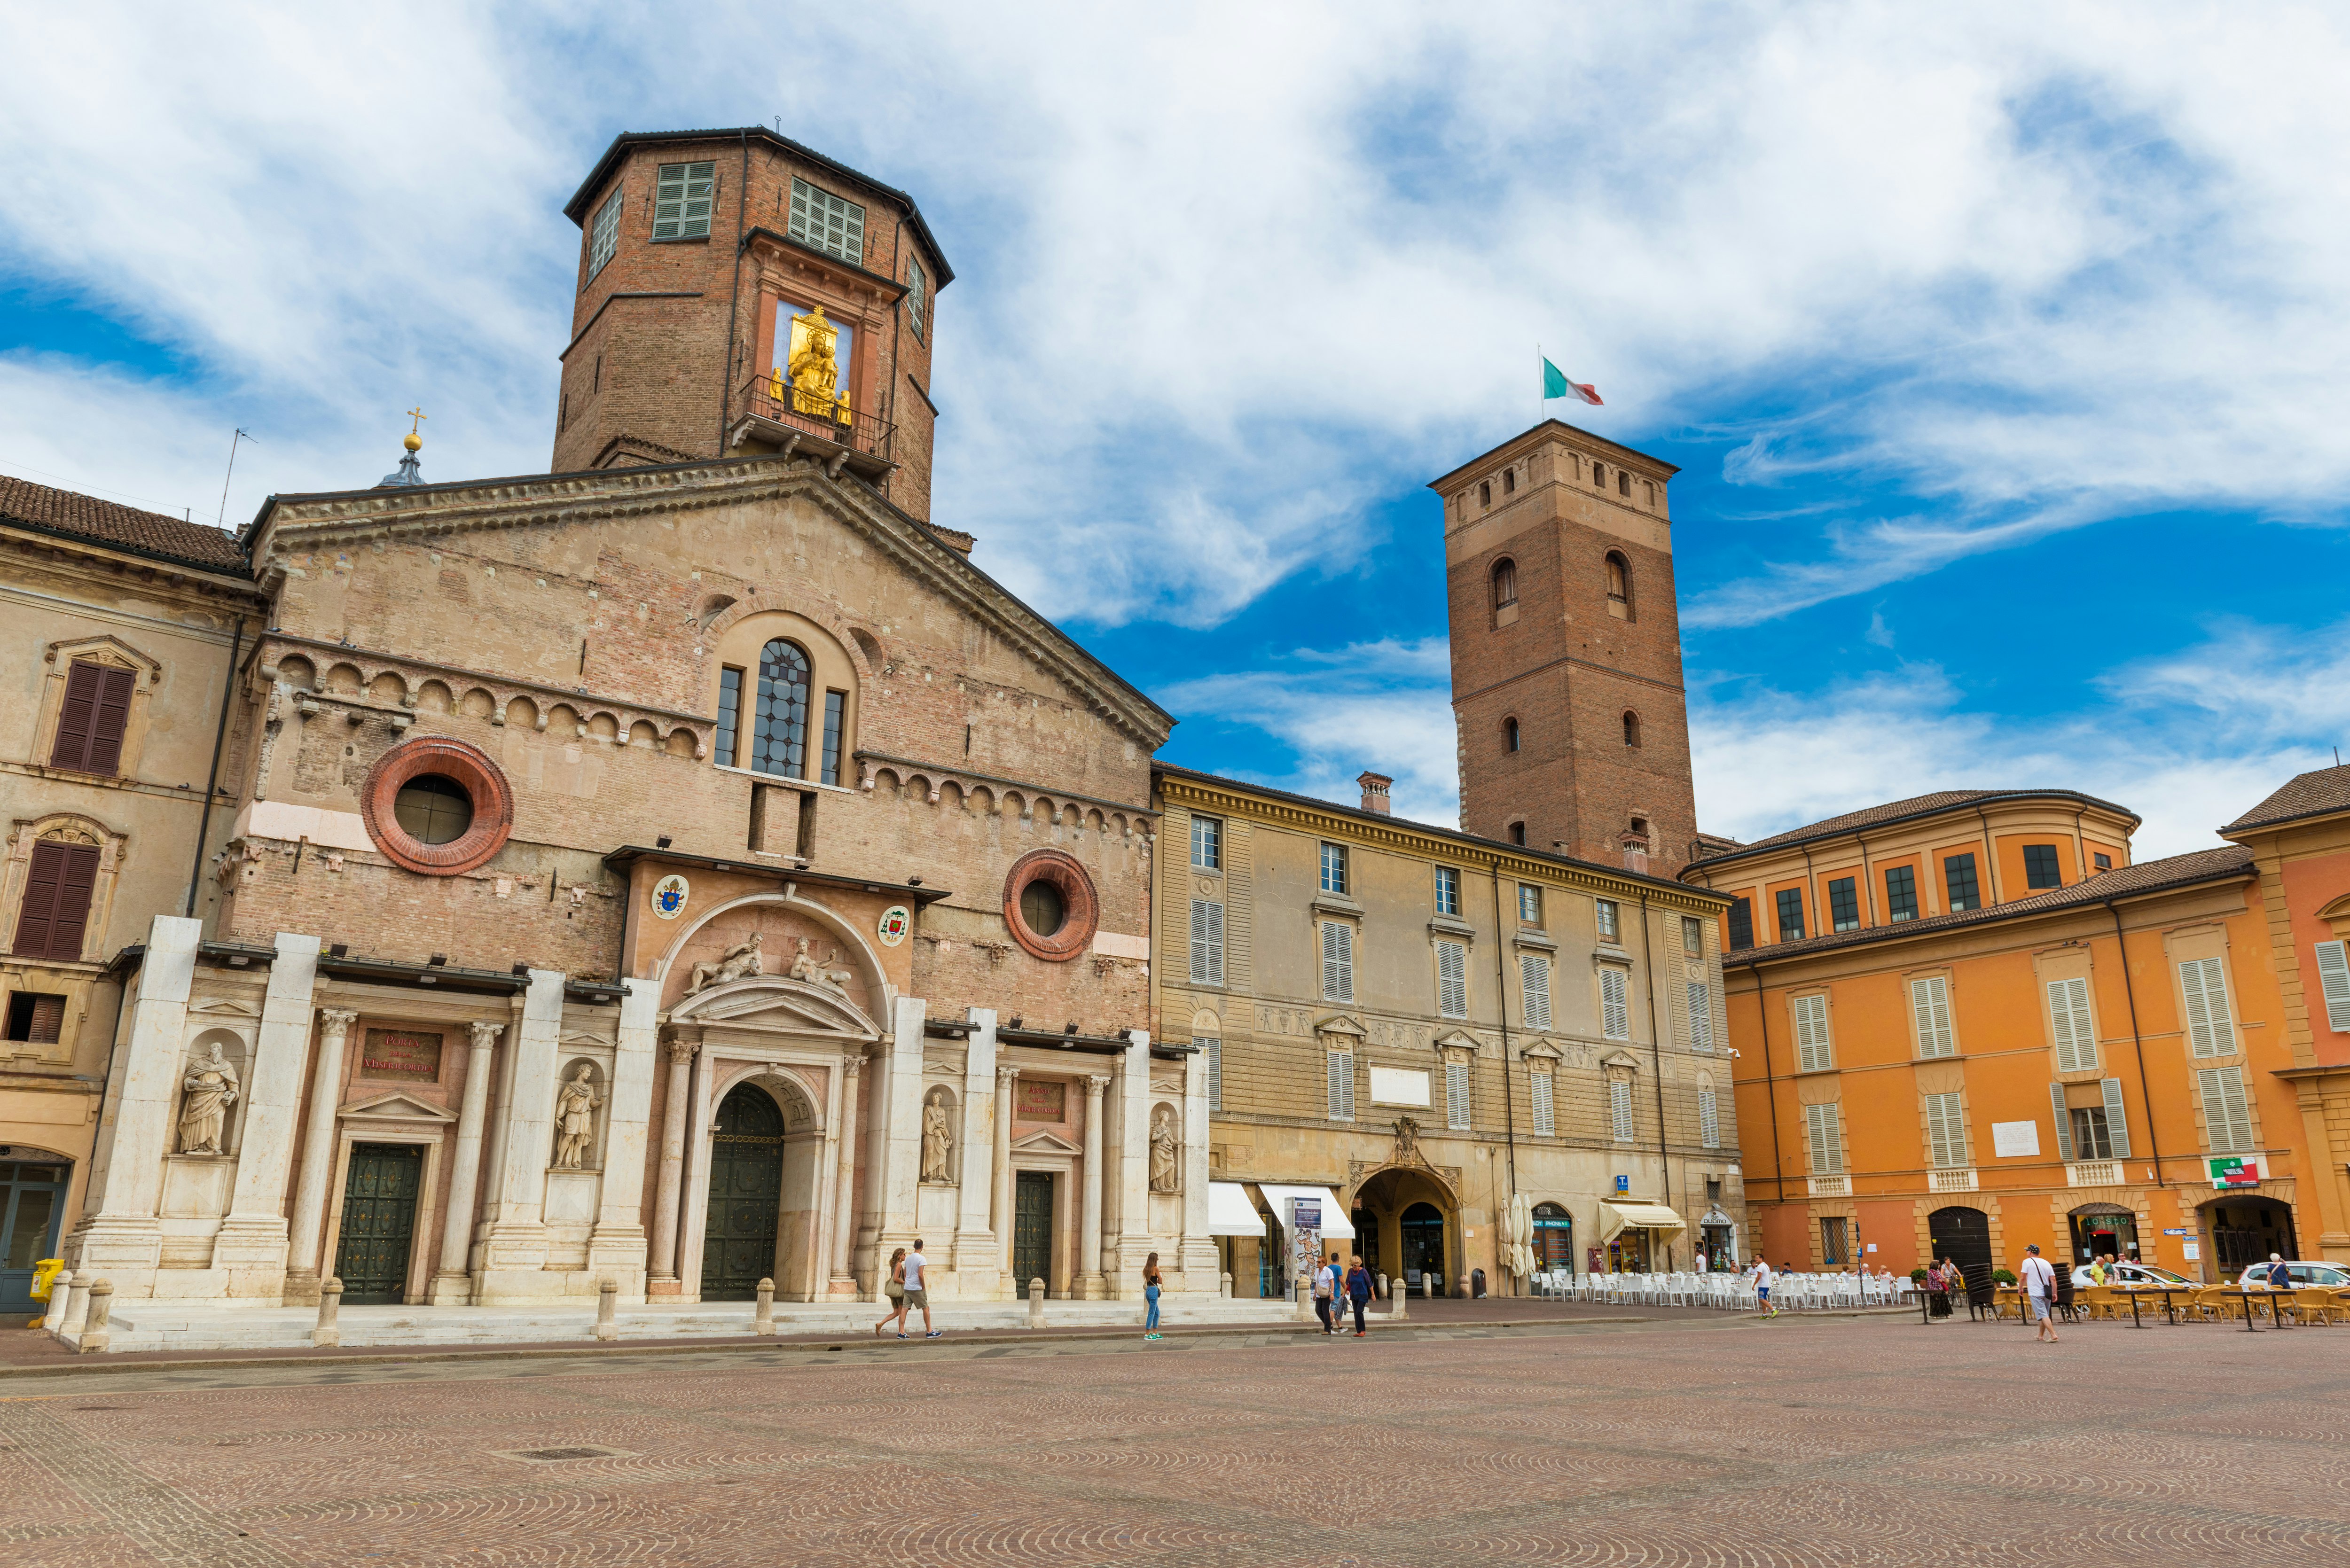 The central square of Reggio Emilia (Camillo Prampolini) - old medieval architecture in the historic part of the city